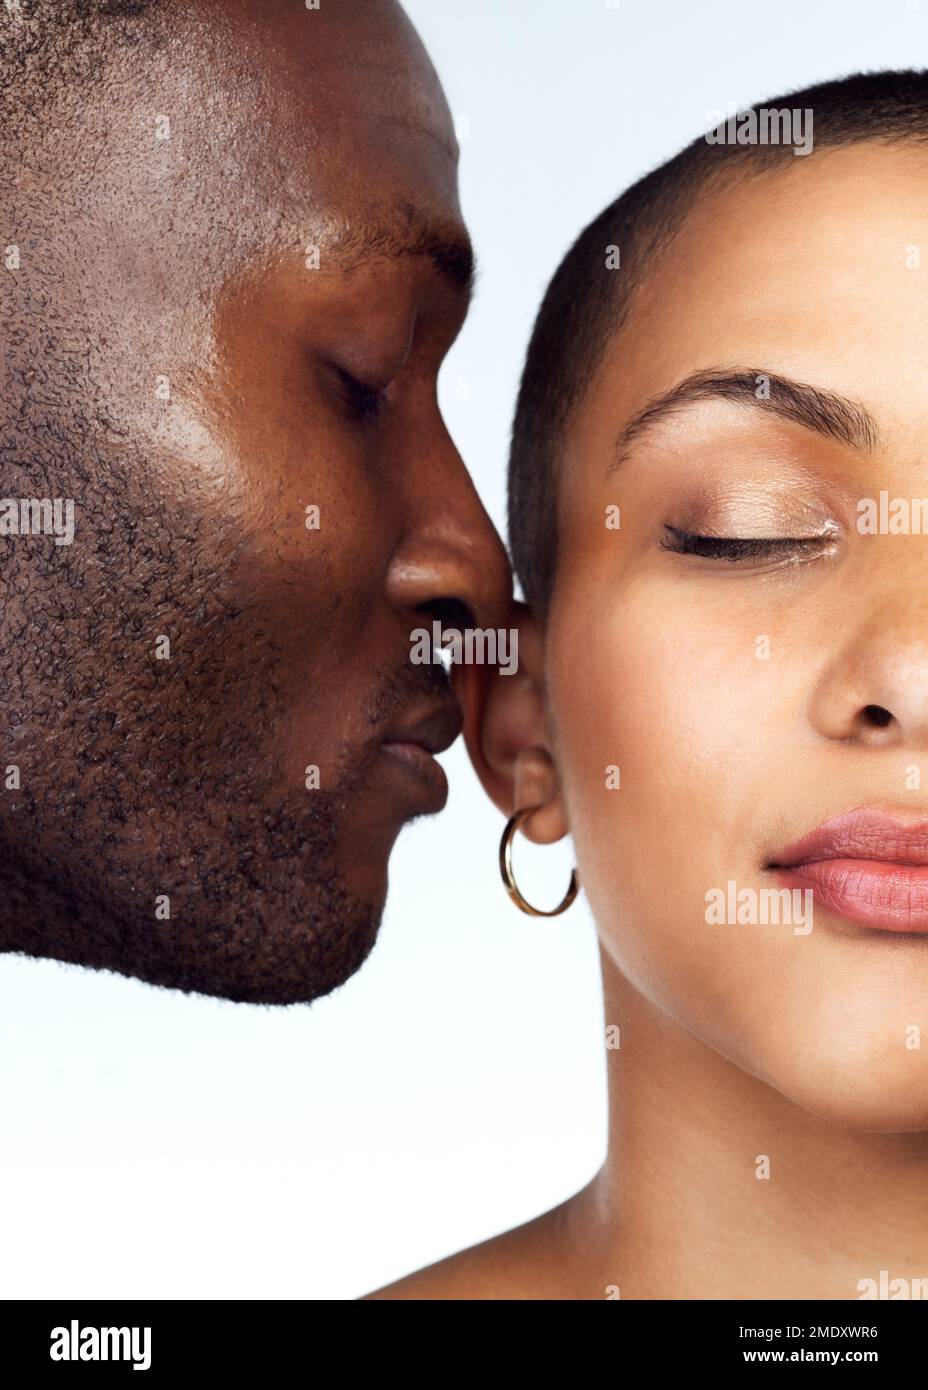 Il profumo dell'amore permane intorno a noi. Foto studio di una coppia che posa con gli occhi chiusi su uno sfondo grigio. Foto Stock